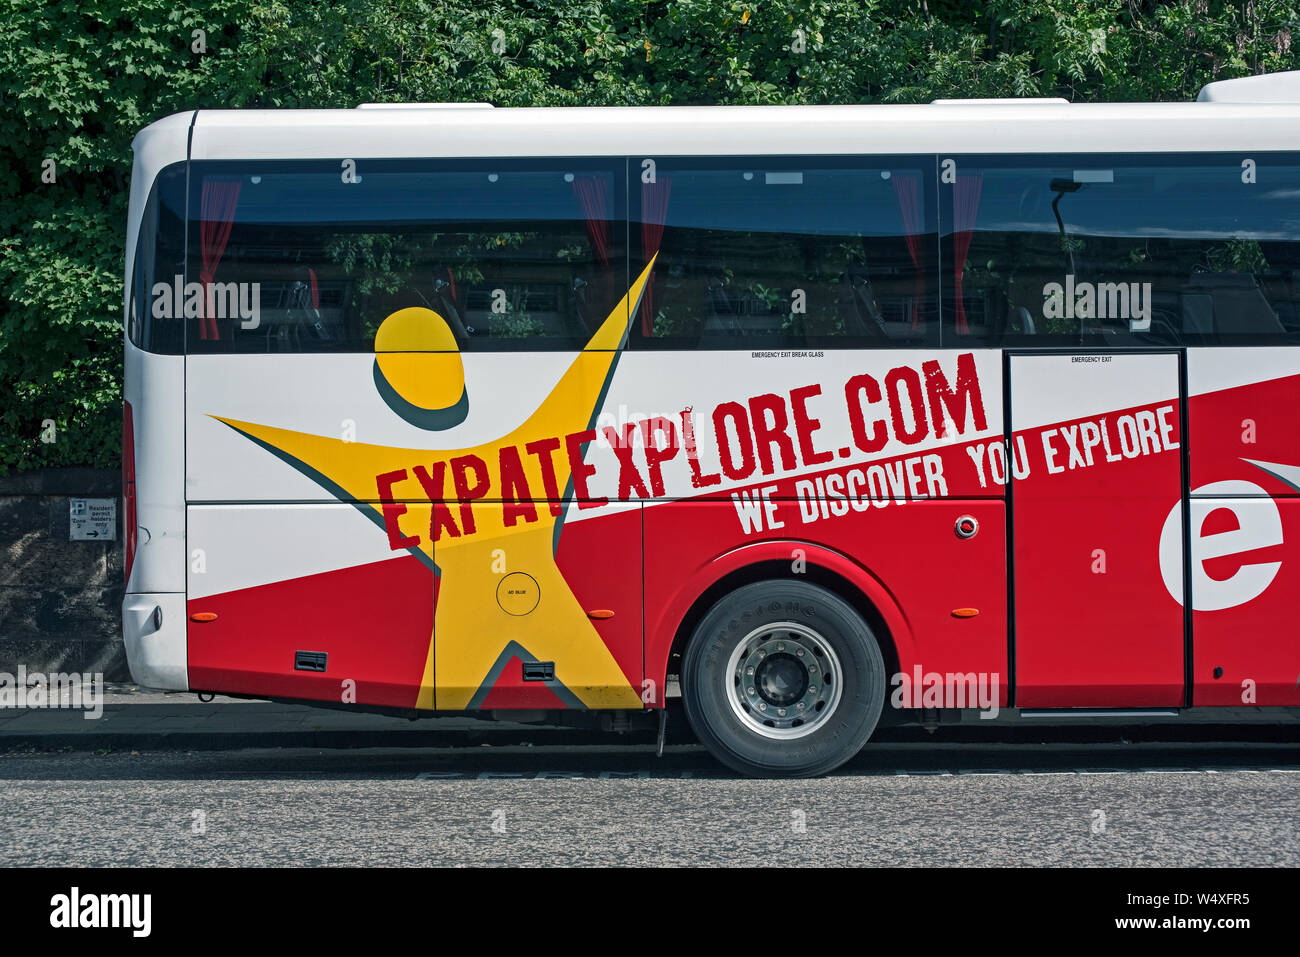 Eine Expatexplore tour bus in Edinburgh, Schottland, Großbritannien geparkt. Stockfoto